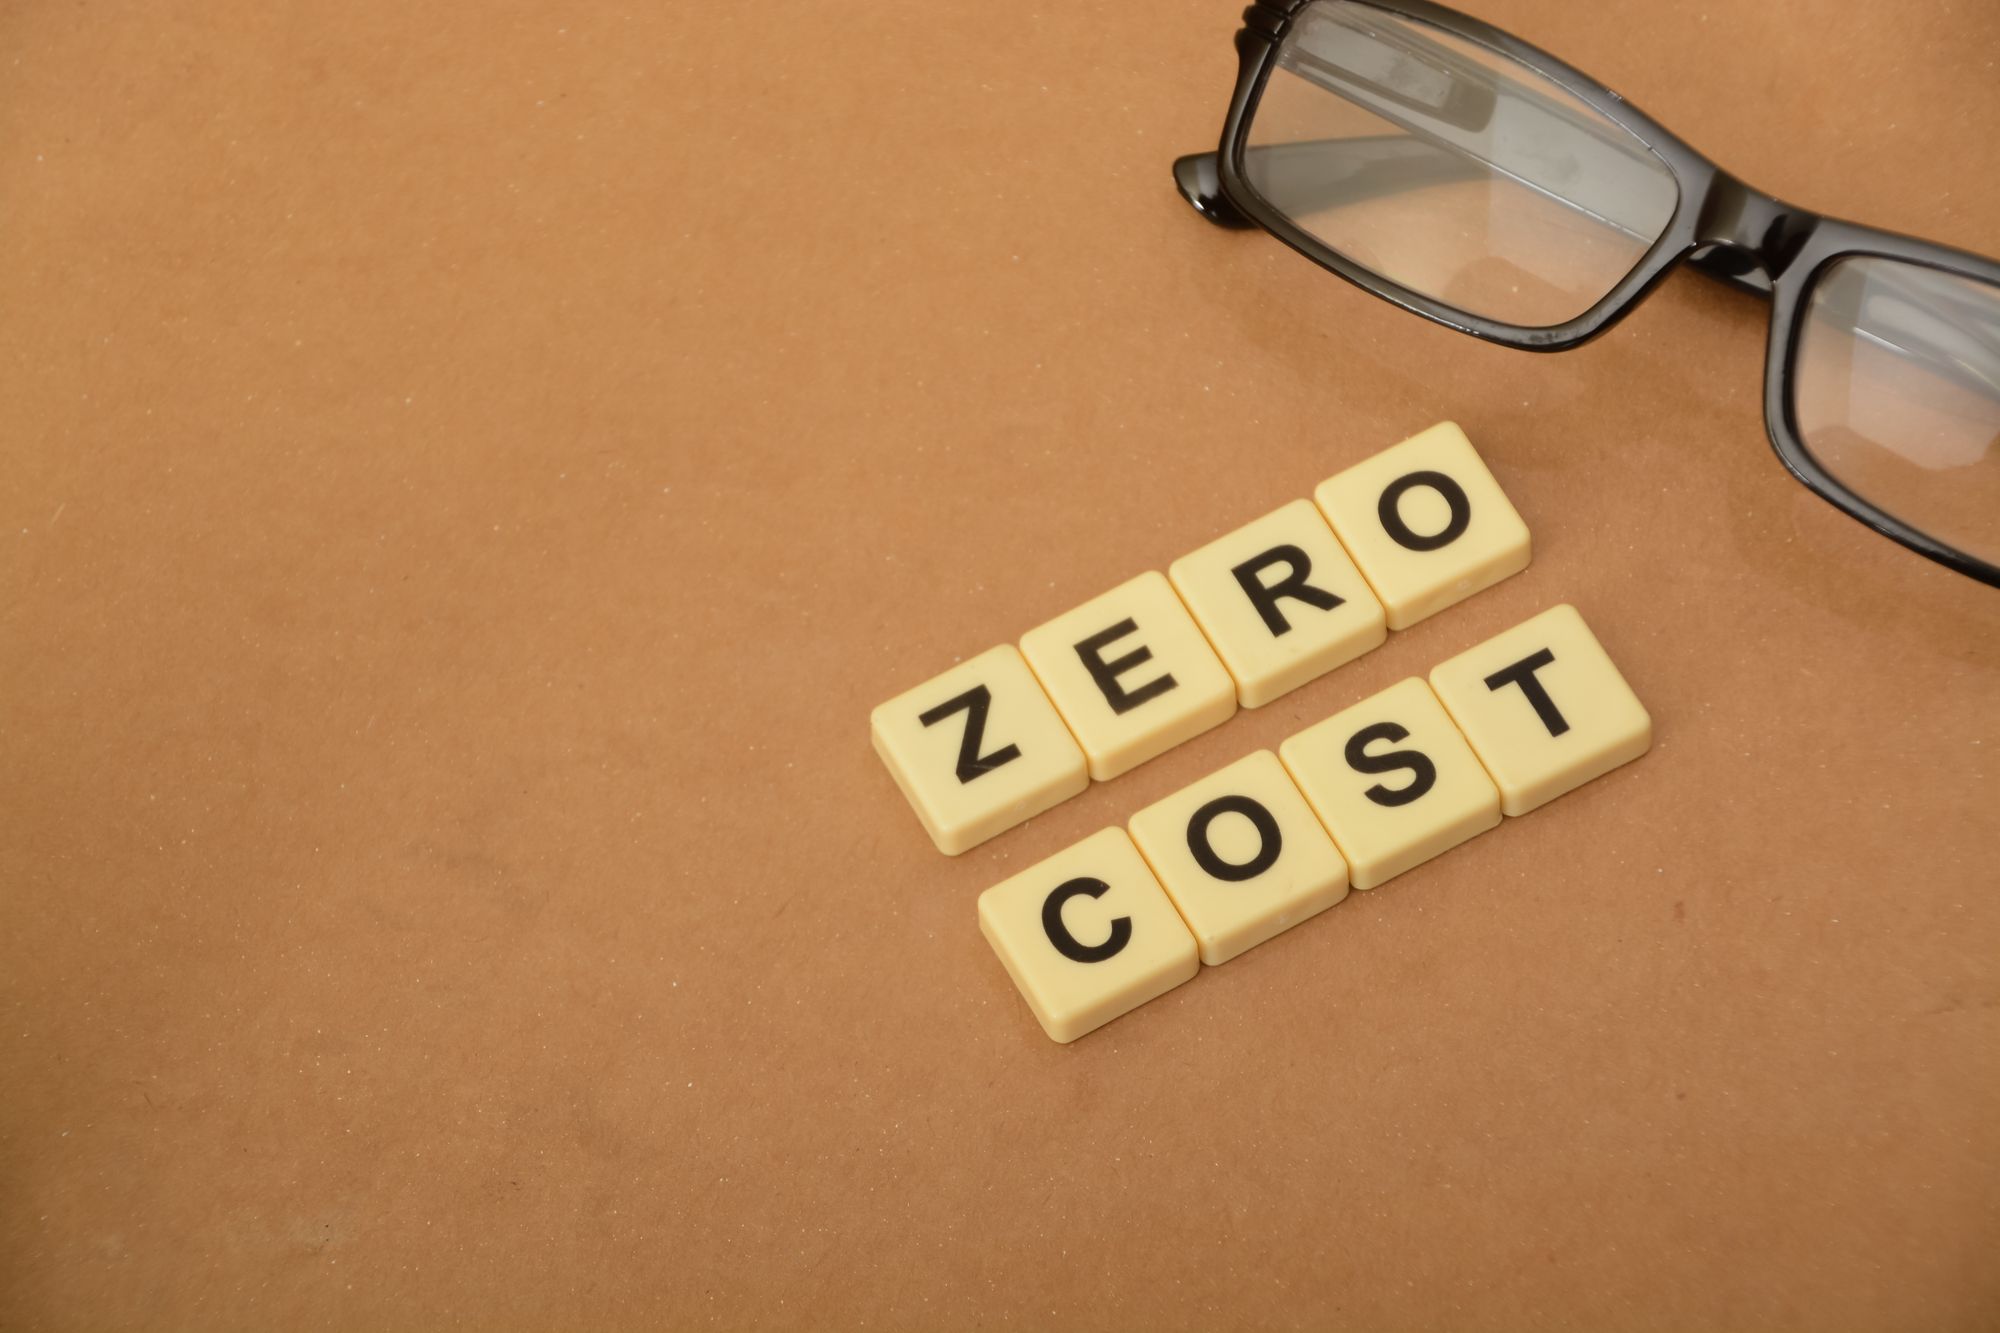 Zero cost